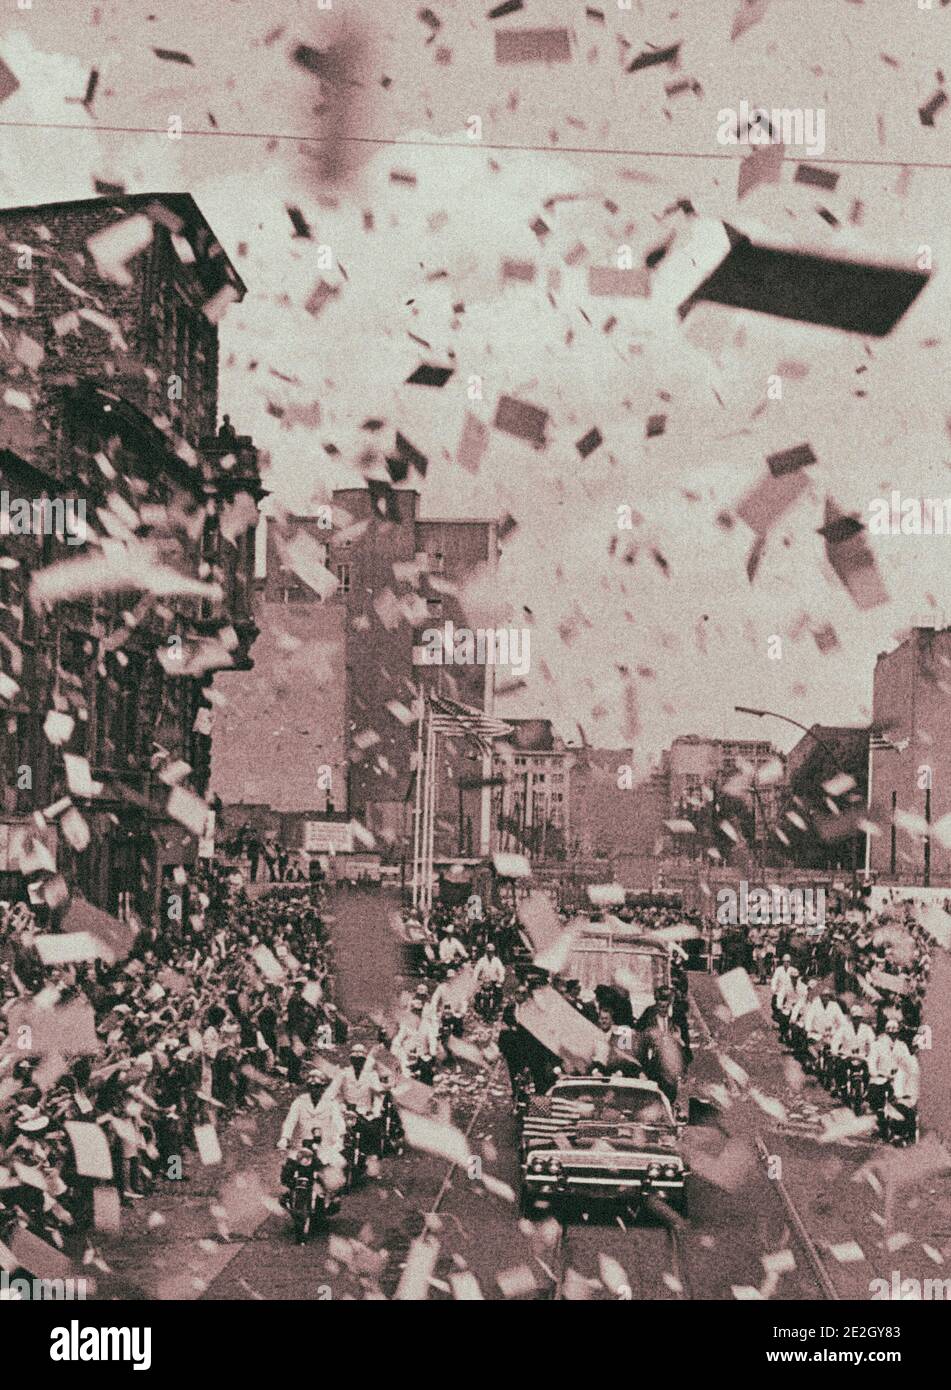 Archivfoto von Präsident Kennedy in Deutschland. Blizzard von geschreddertem  Papier aus Berlins höheren Gebäuden verwischt fast den Blick von Präsident  Ke Stockfotografie - Alamy